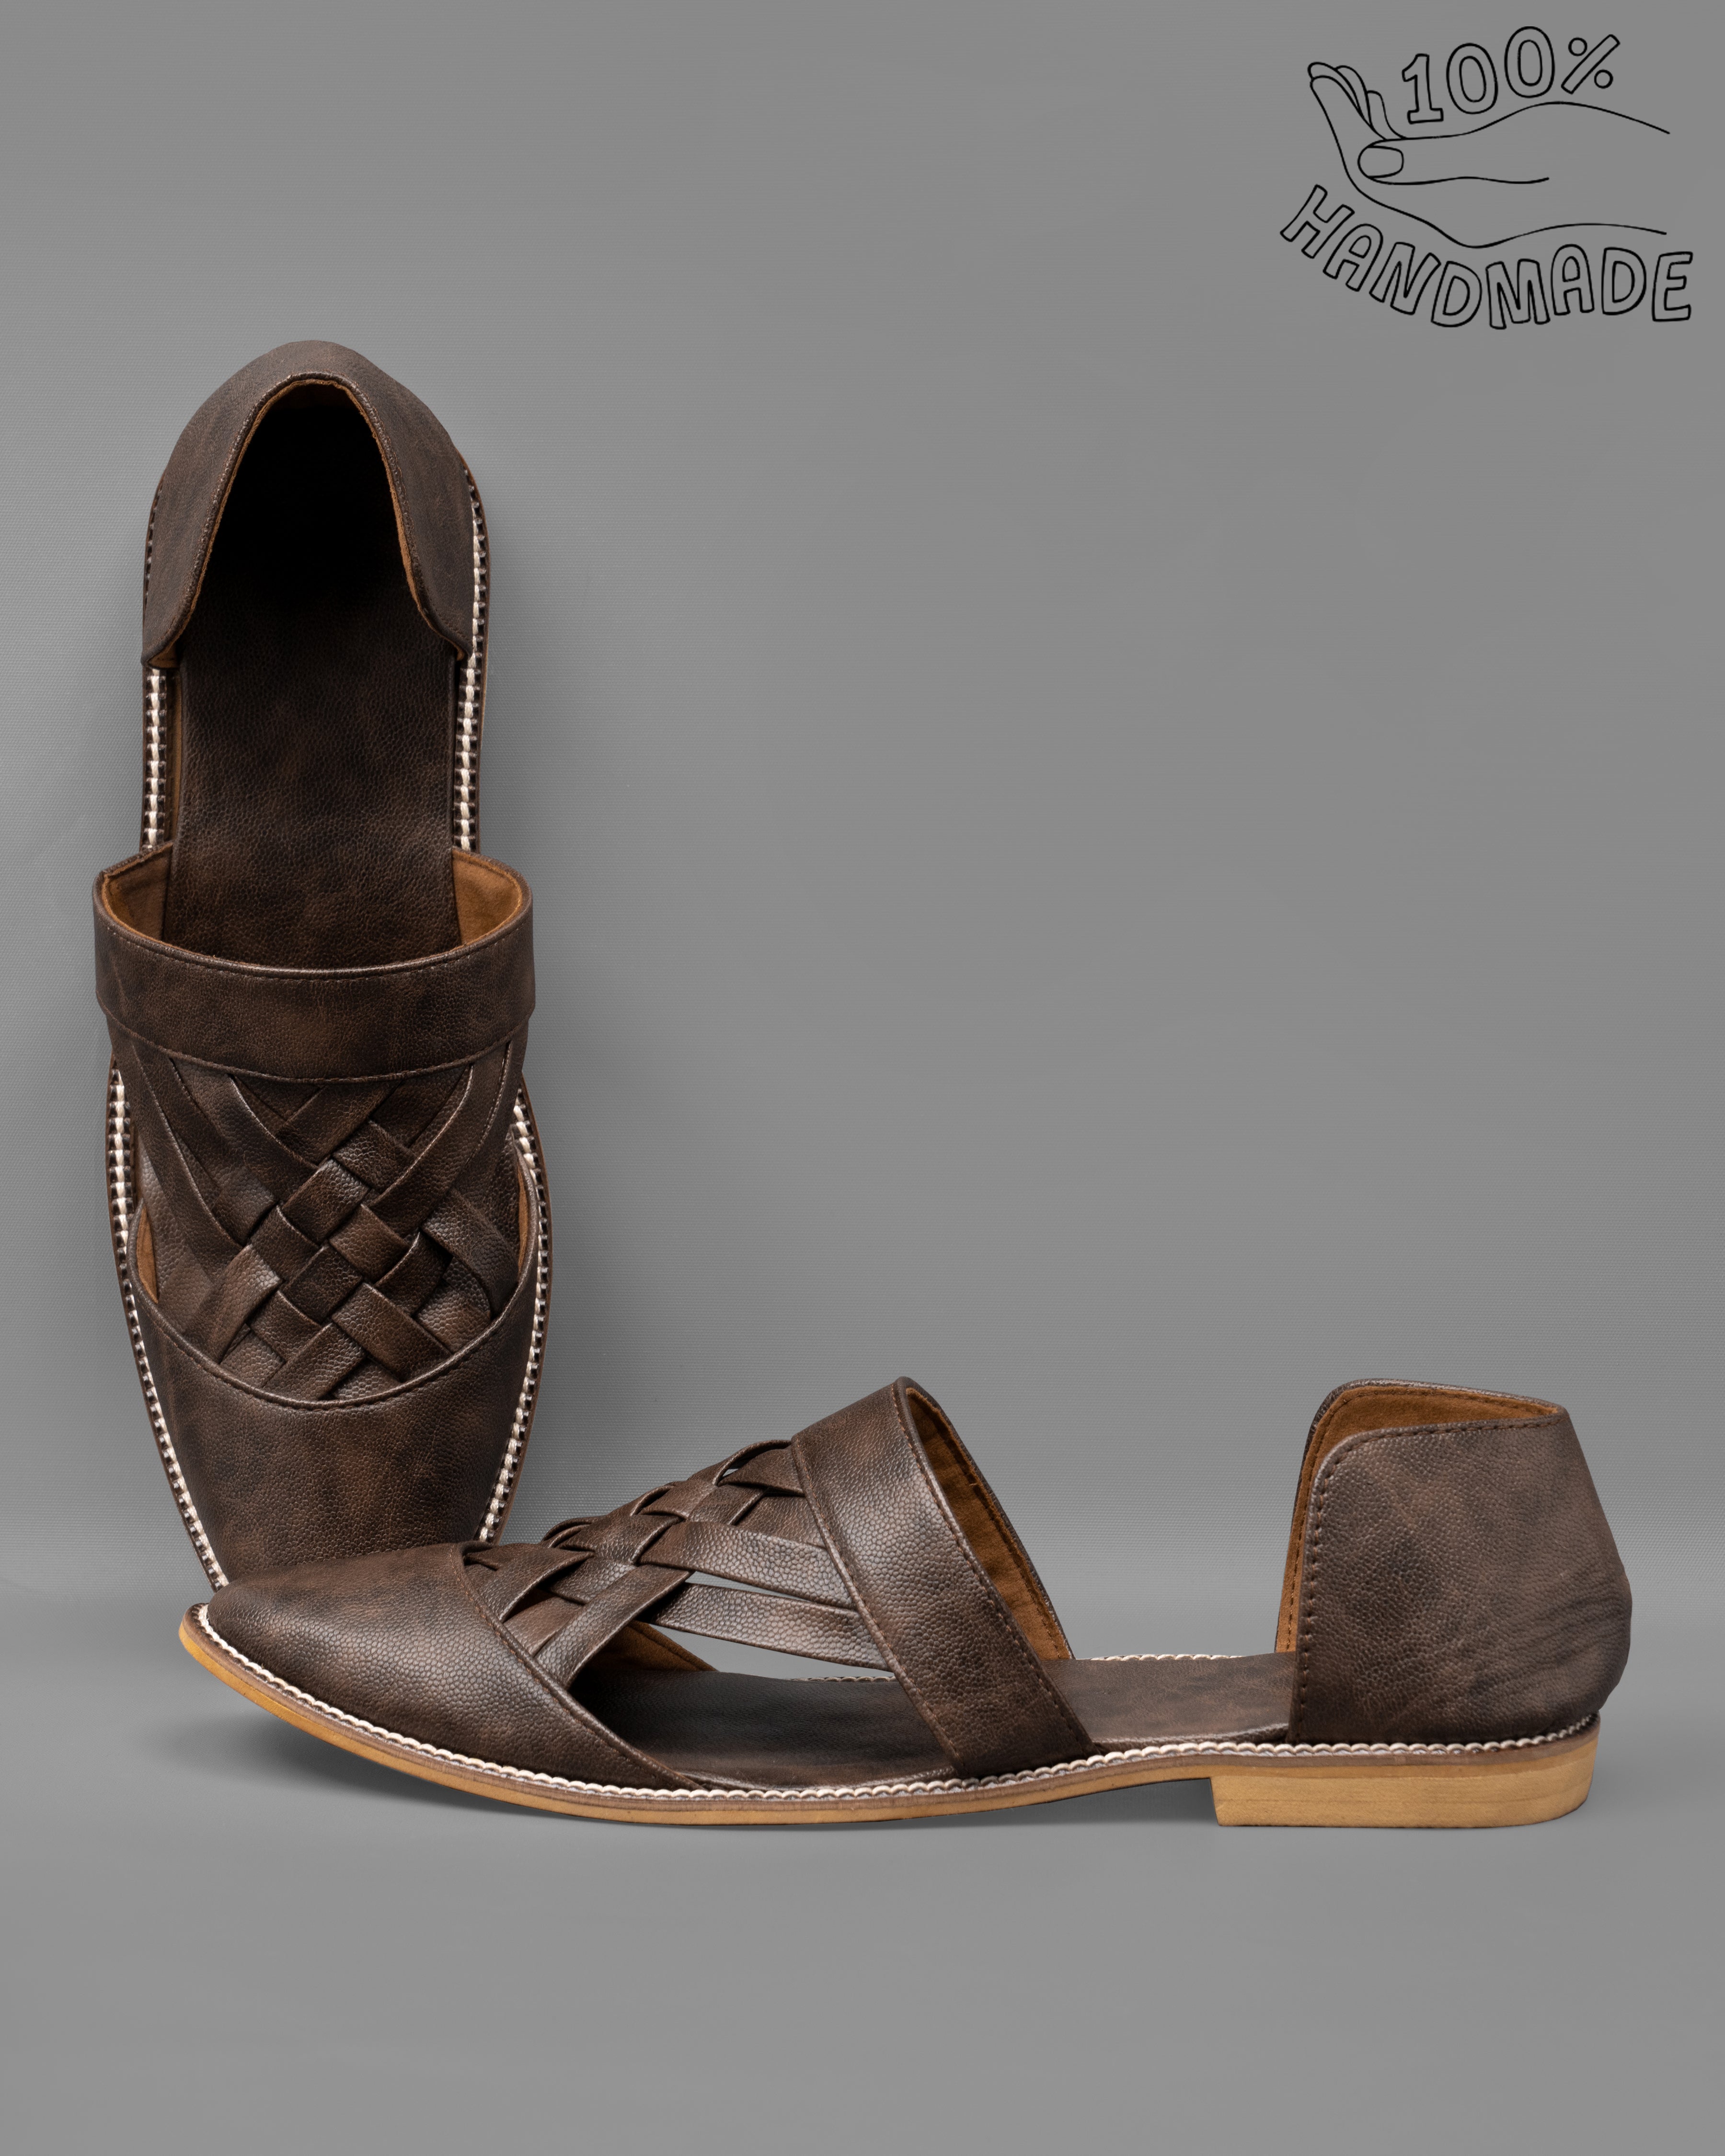 Dark Brown Vegan Leather Pathanis Sandal FT101-6, FT101-7, FT101-8, FT101-9, FT101-10, FT101-11